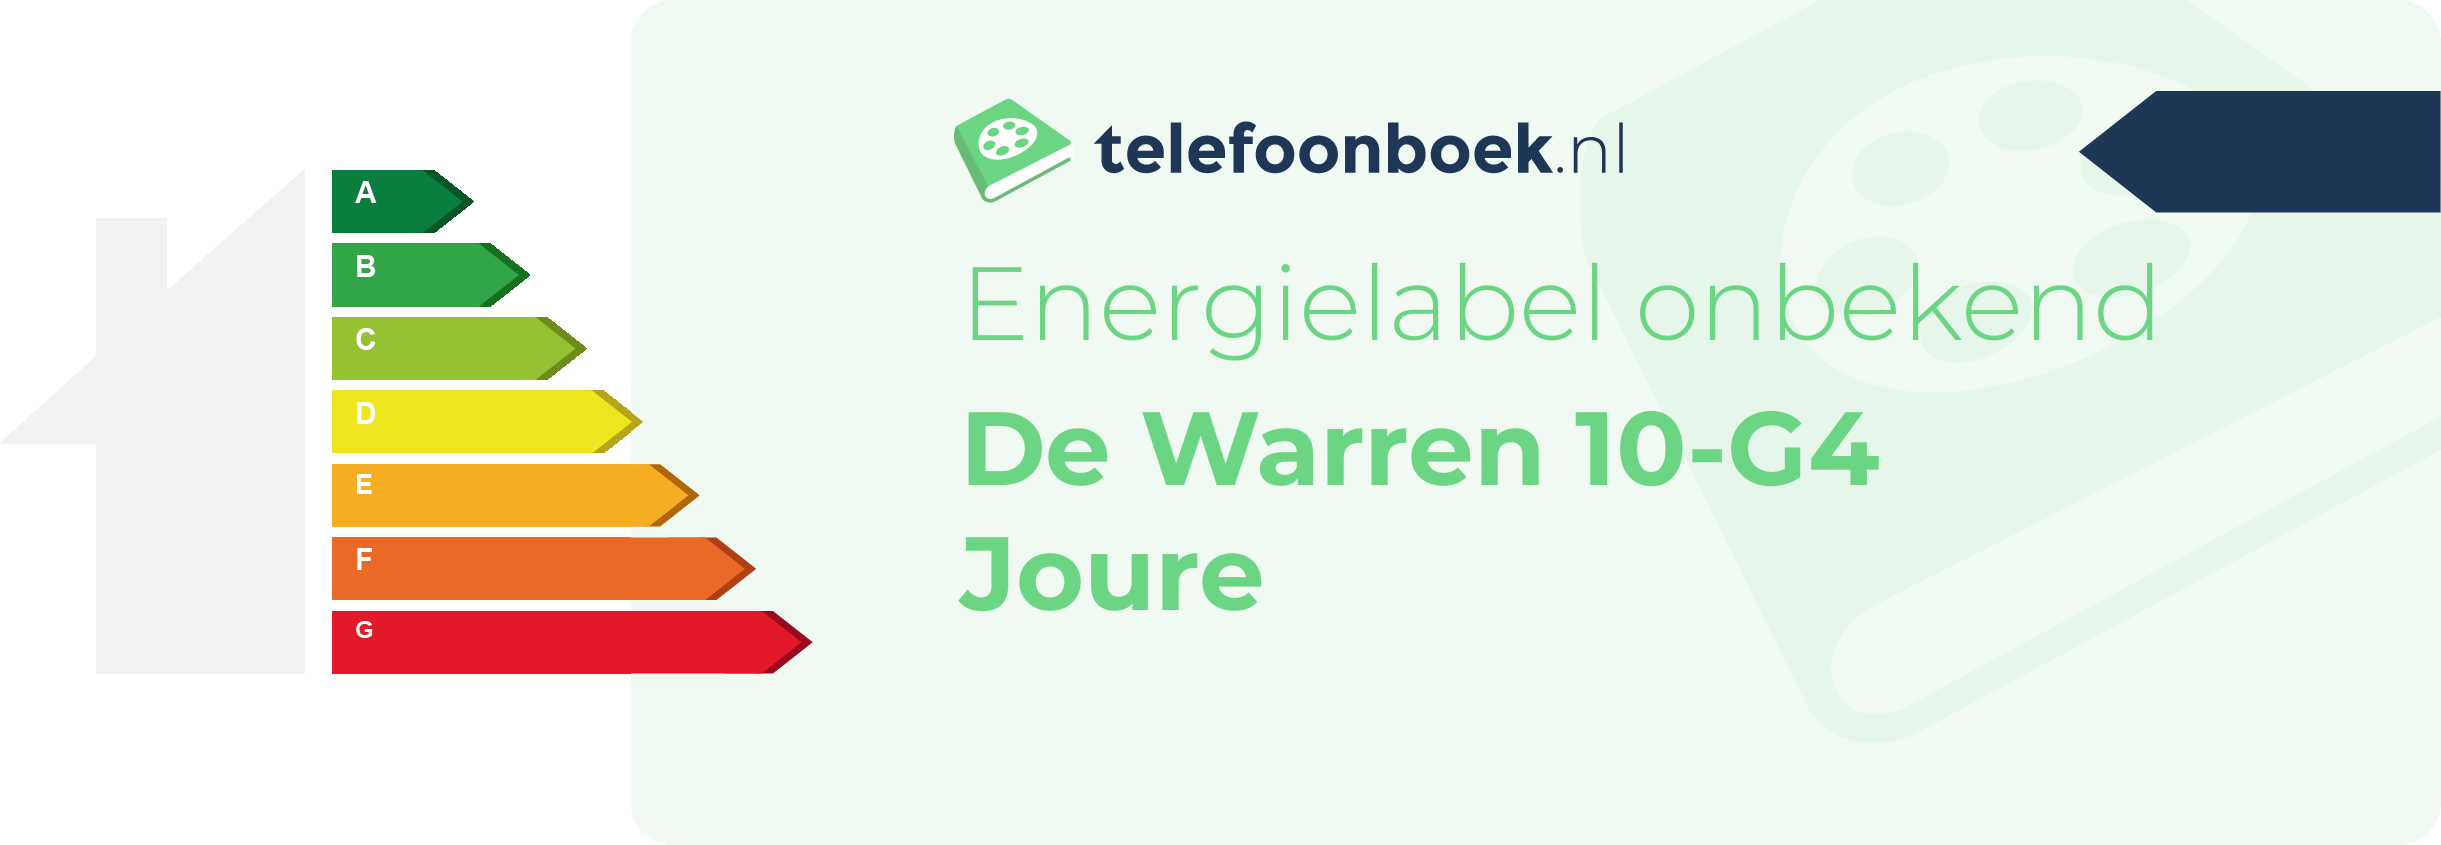 Energielabel De Warren 10-G4 Joure